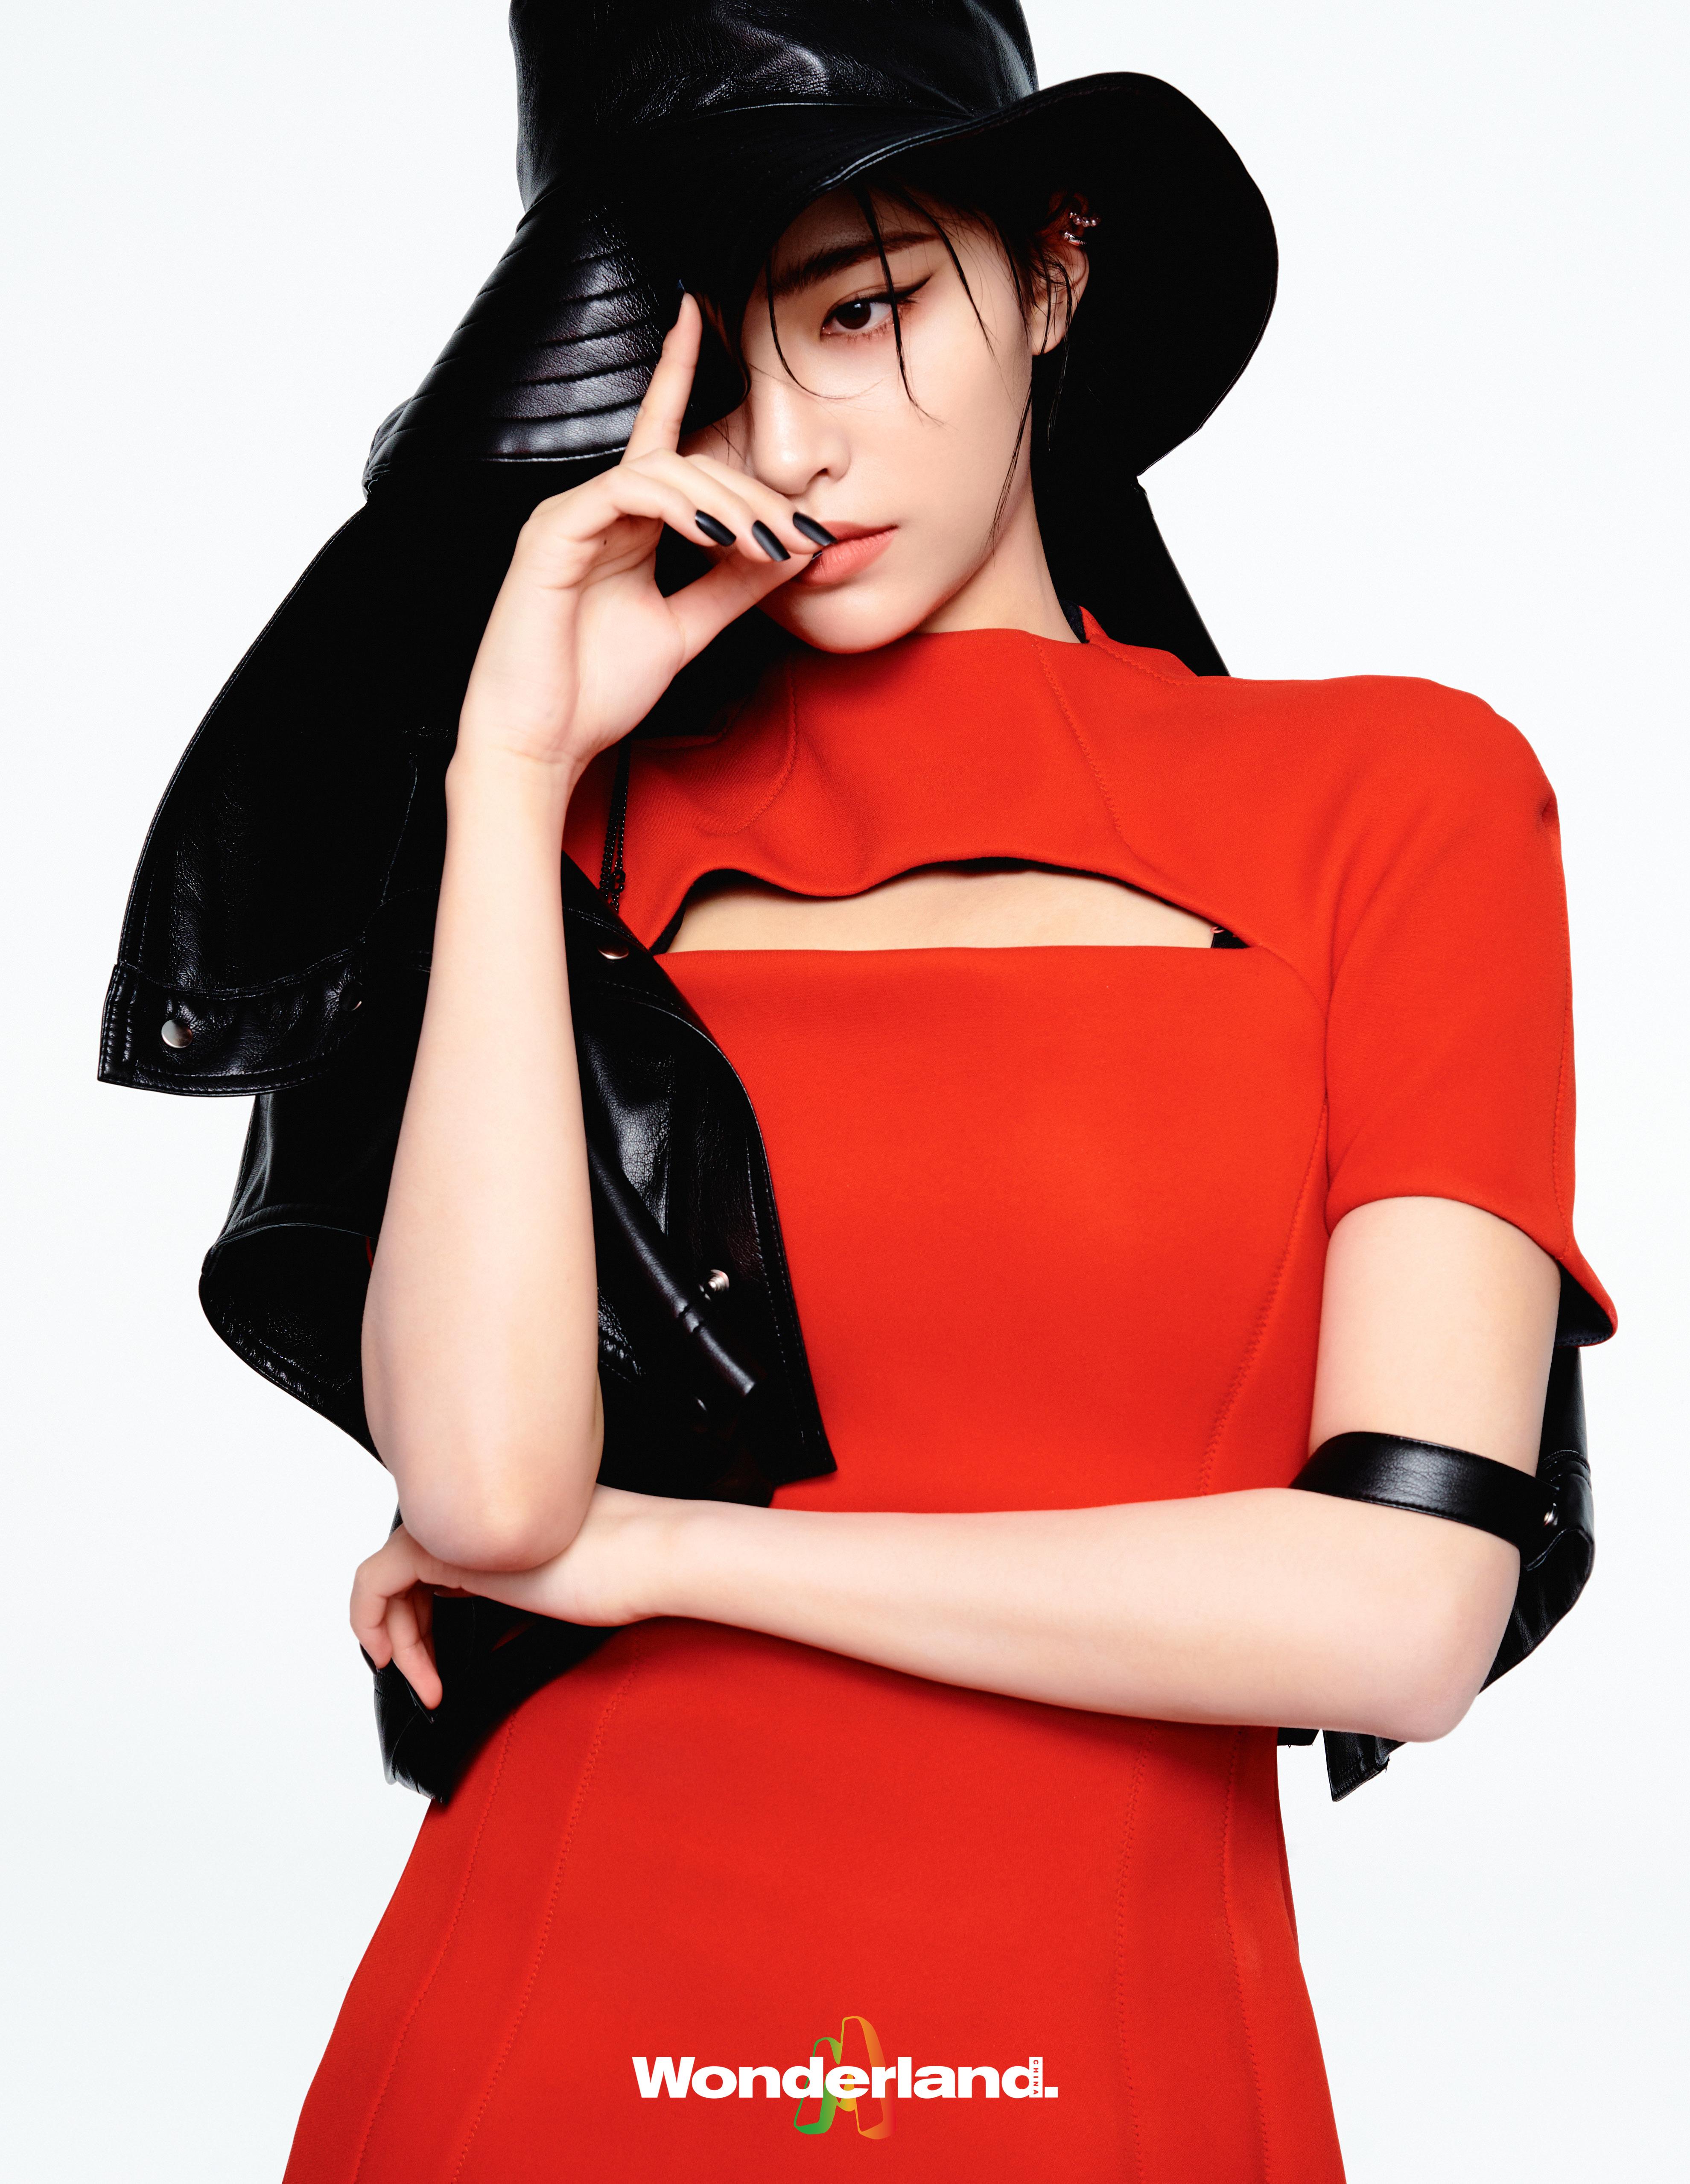 许佳琪最新杂志封面曝光 红色连身裙搭配黑色皮帽湿发撩人,